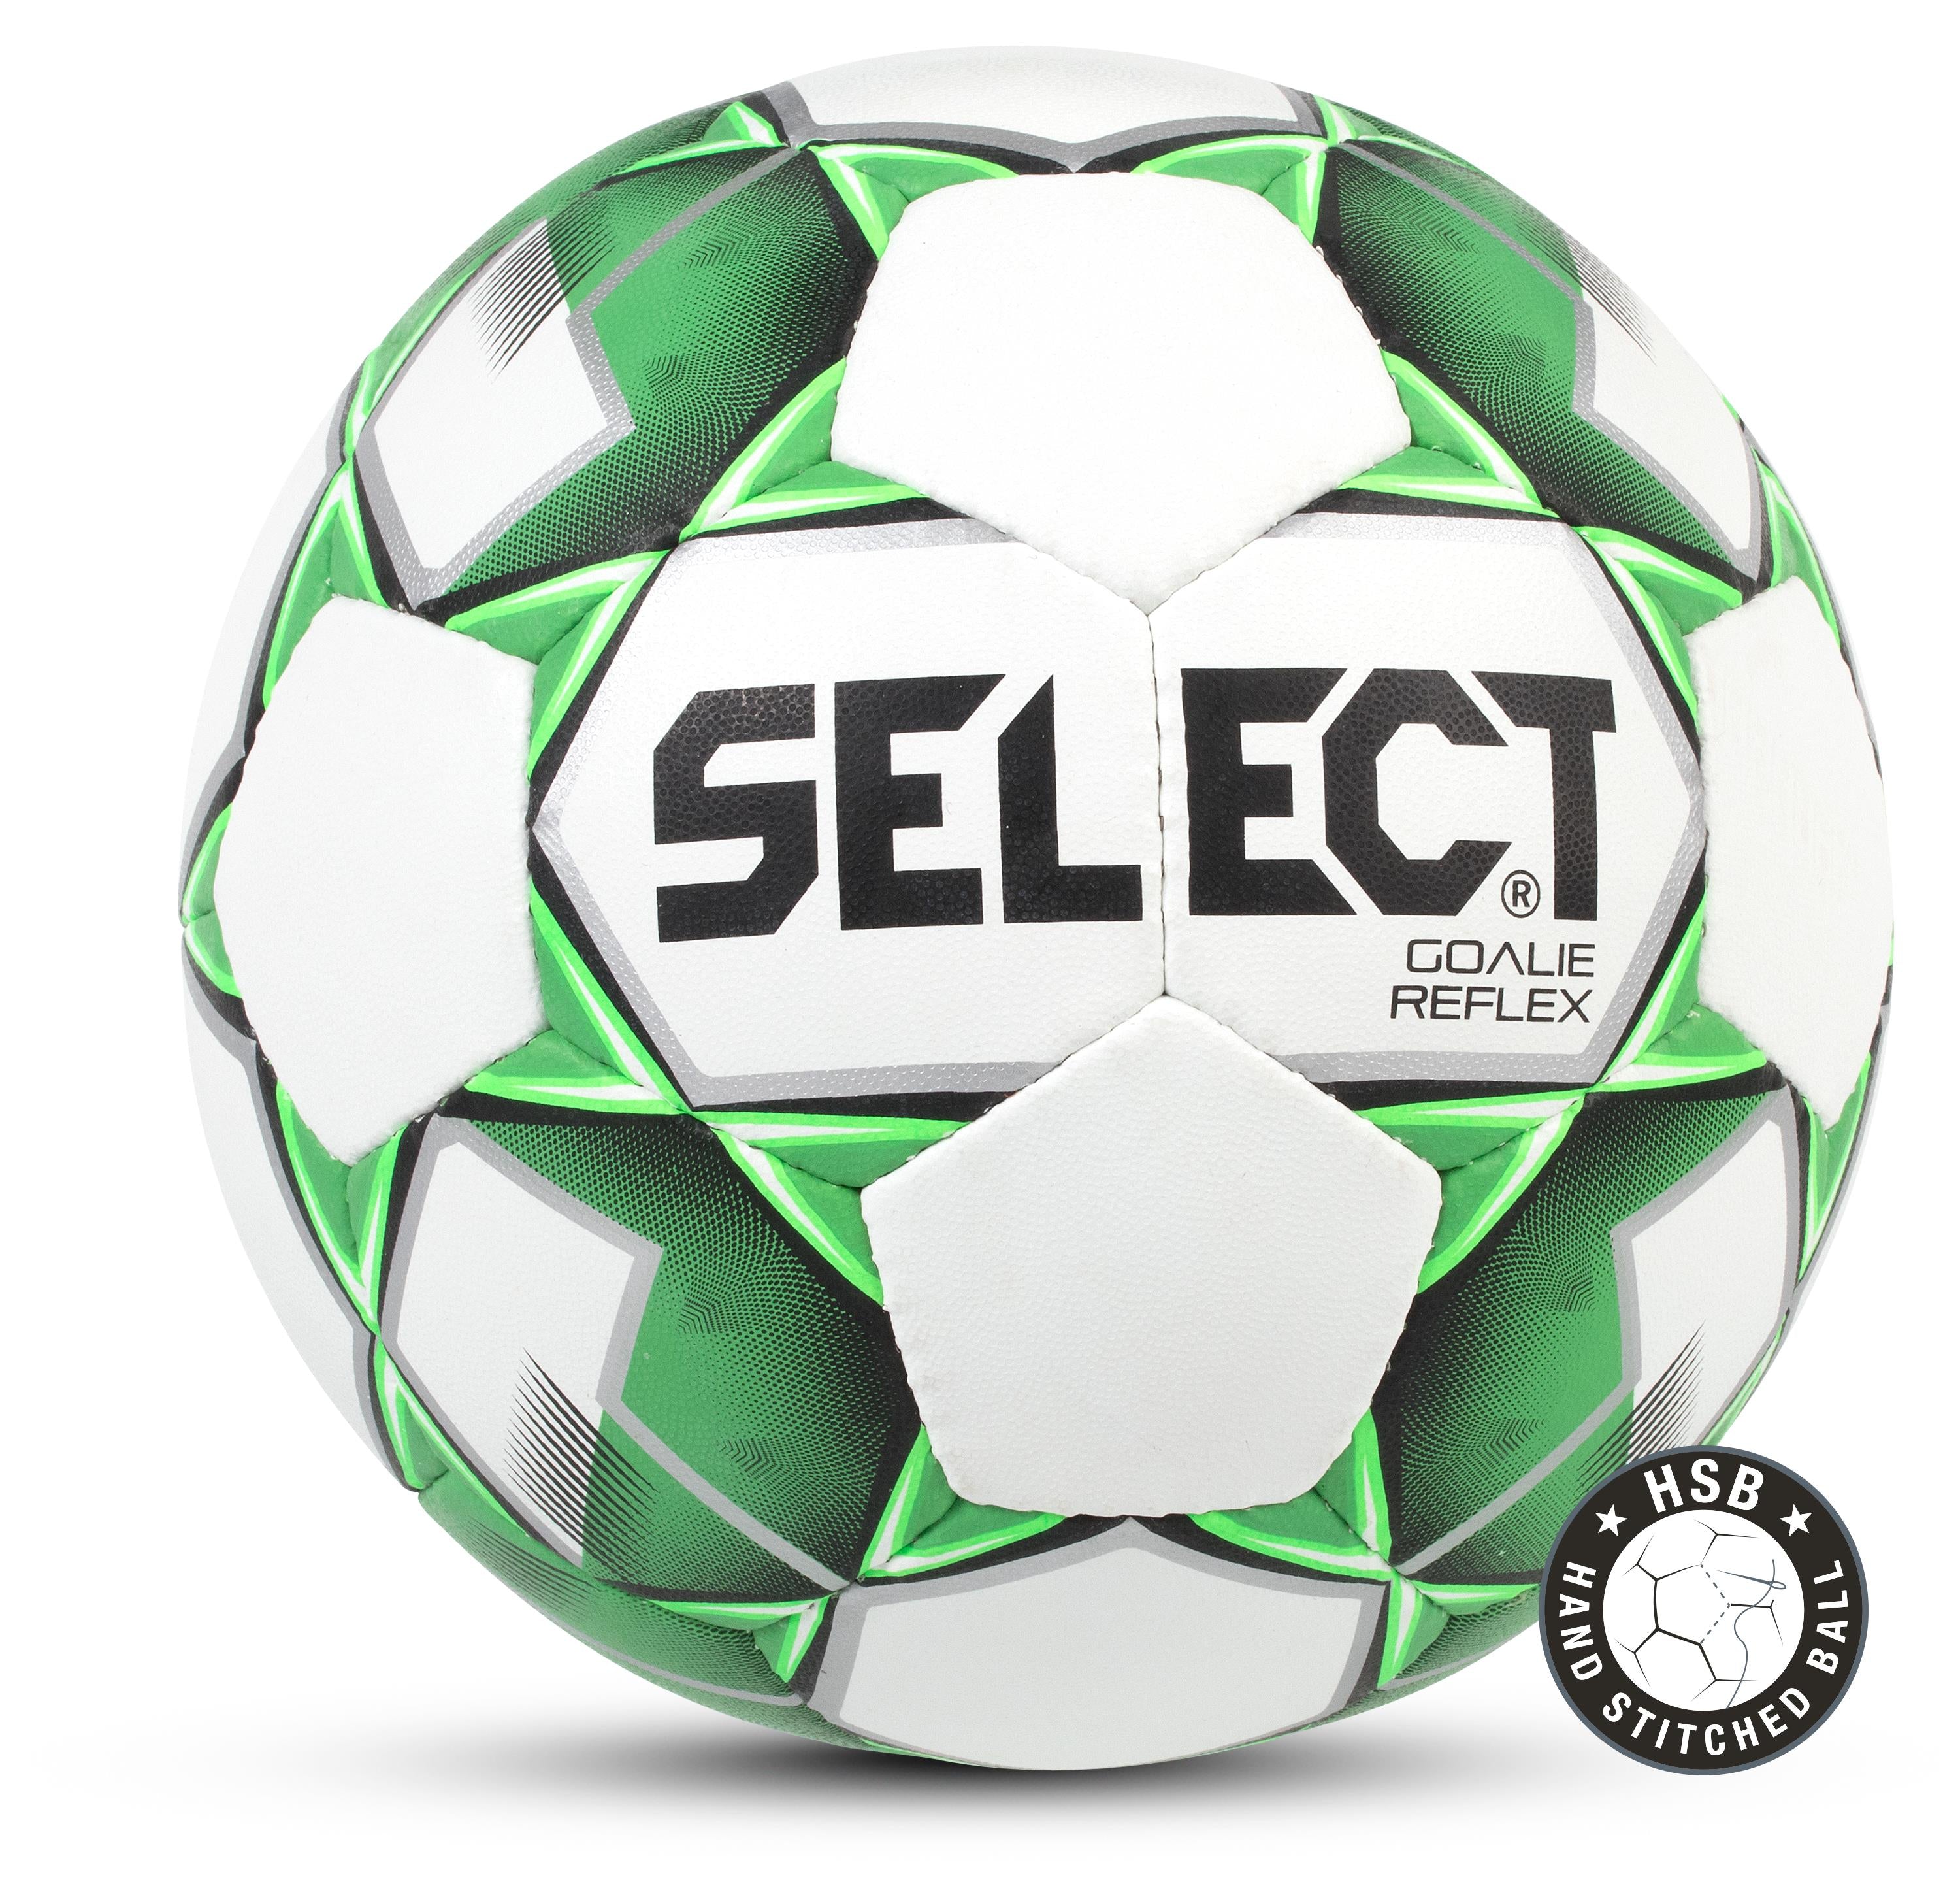 kapperszaak verlies replica Select bal Goalie Reflex Extra (maat 5) – Megavoetbalshop.com